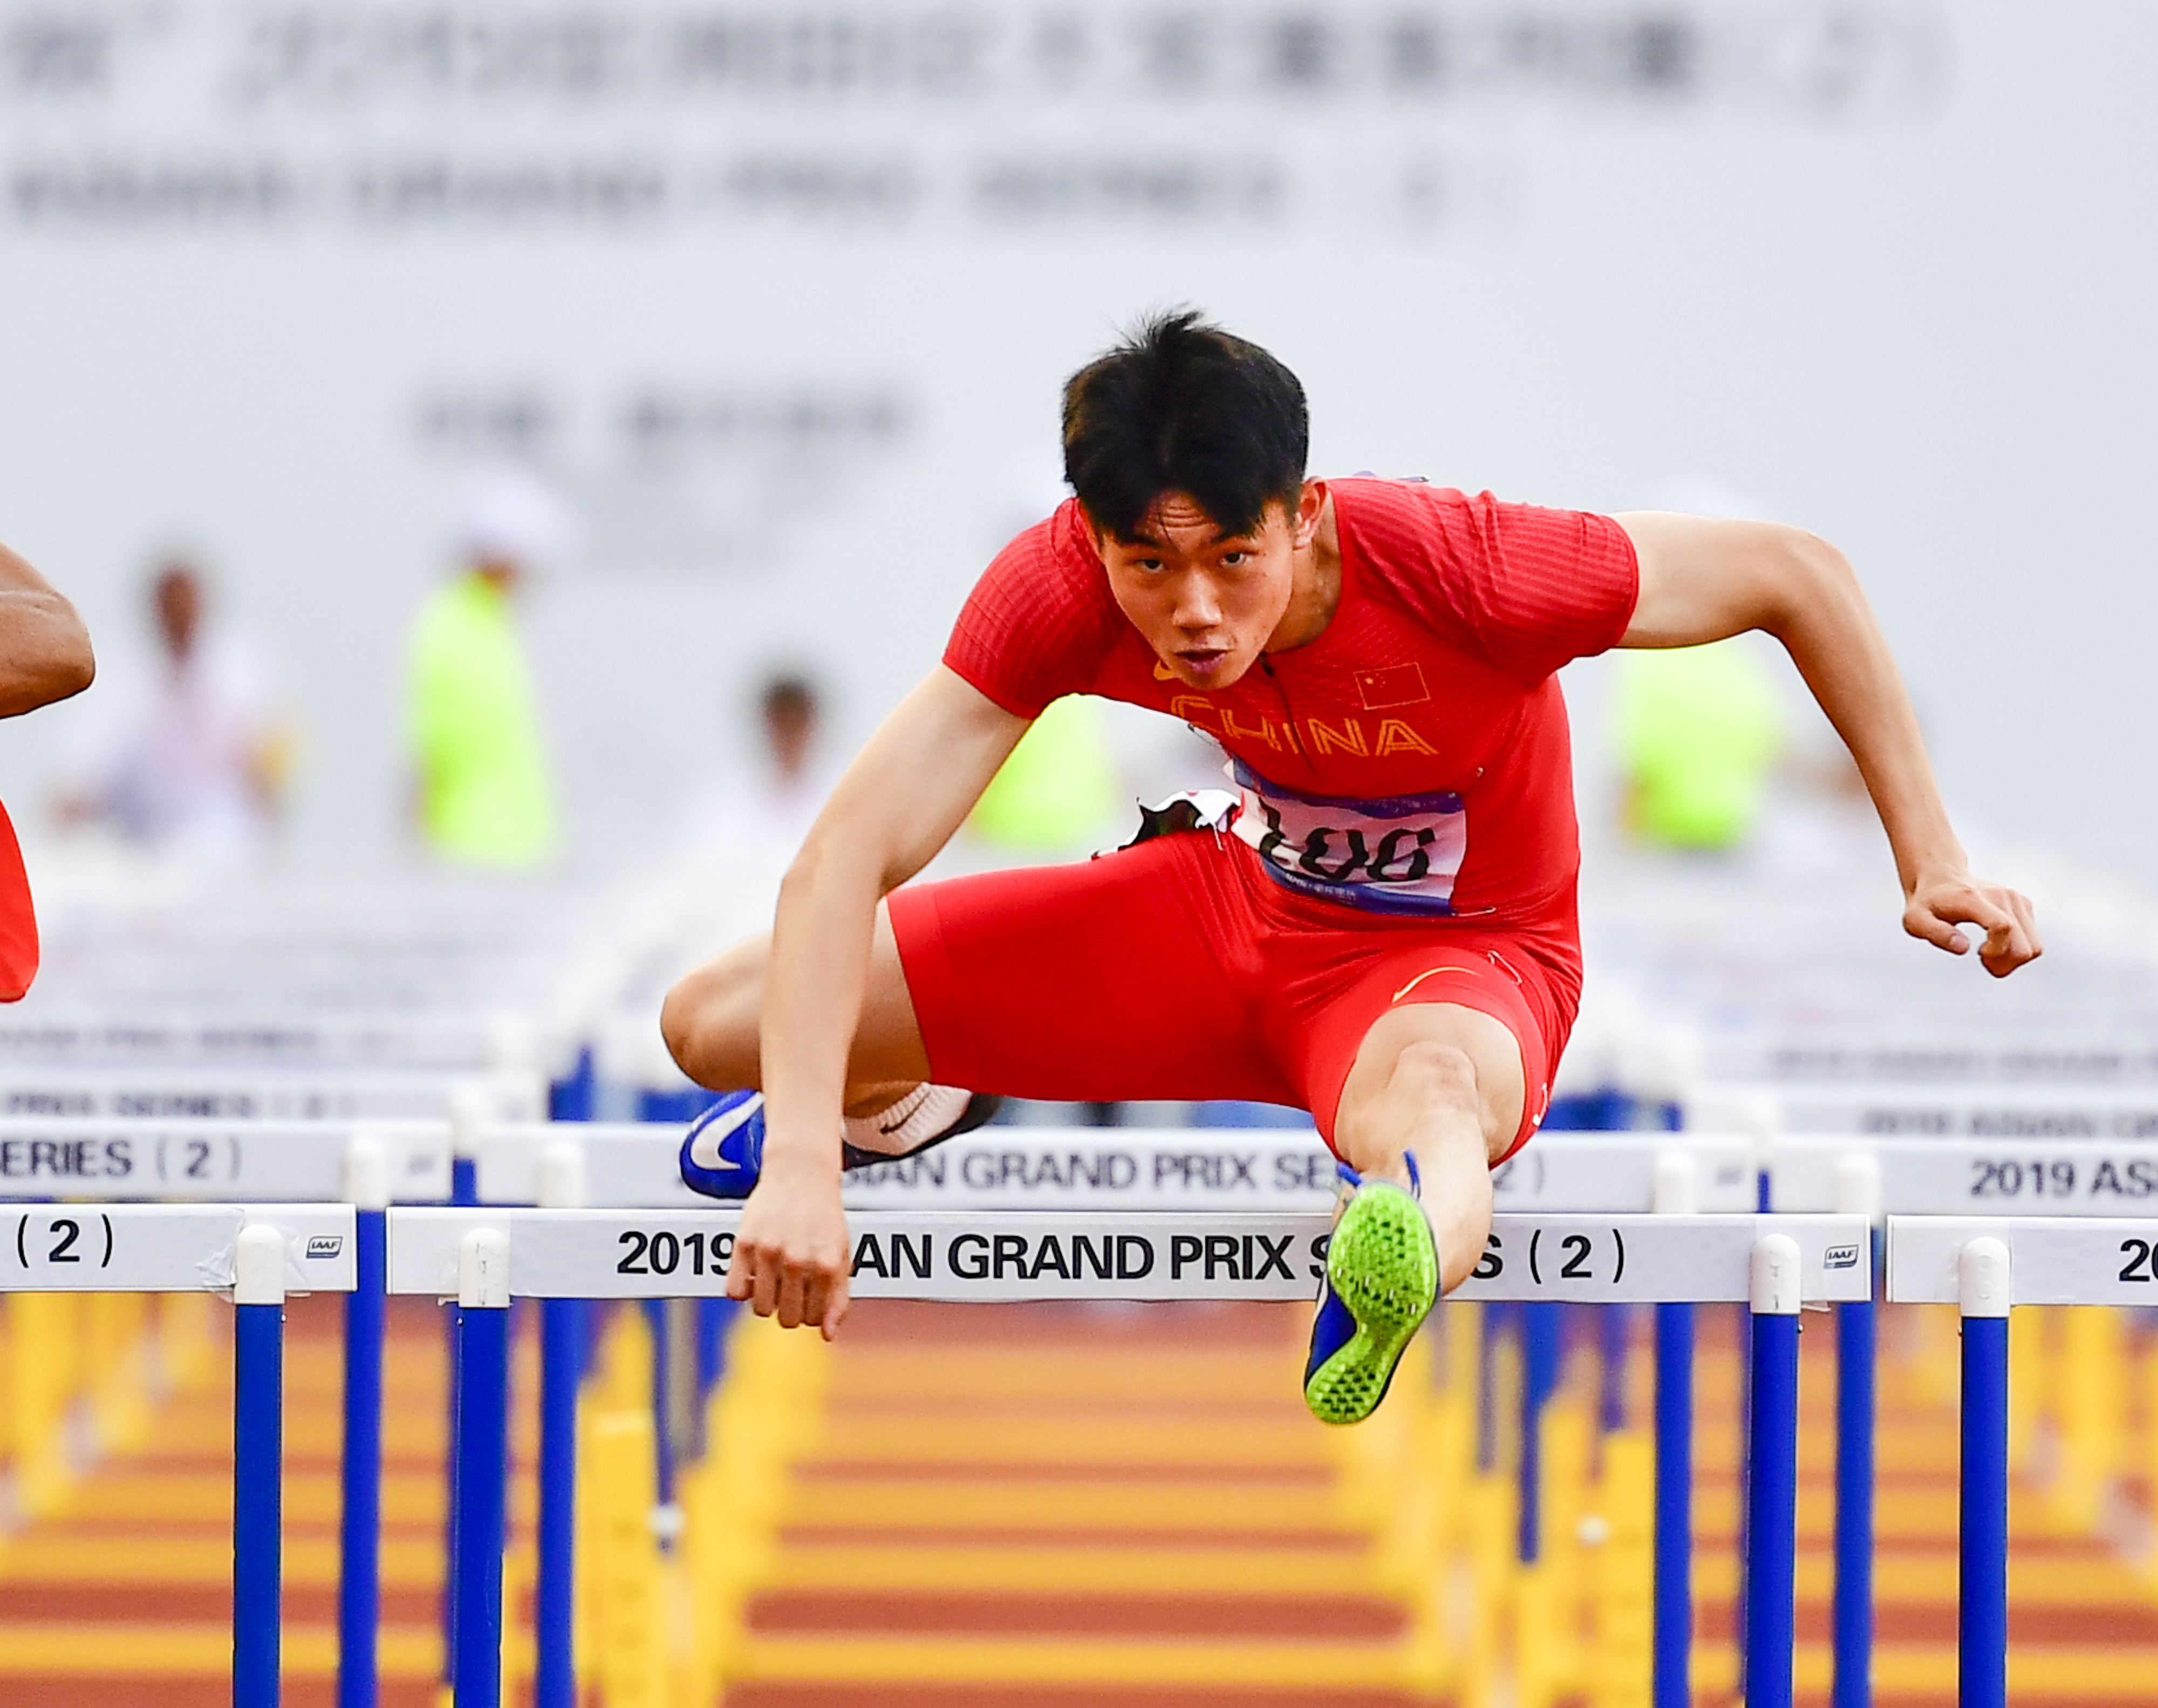 田径——亚洲大奖赛:男子110米栏赛况